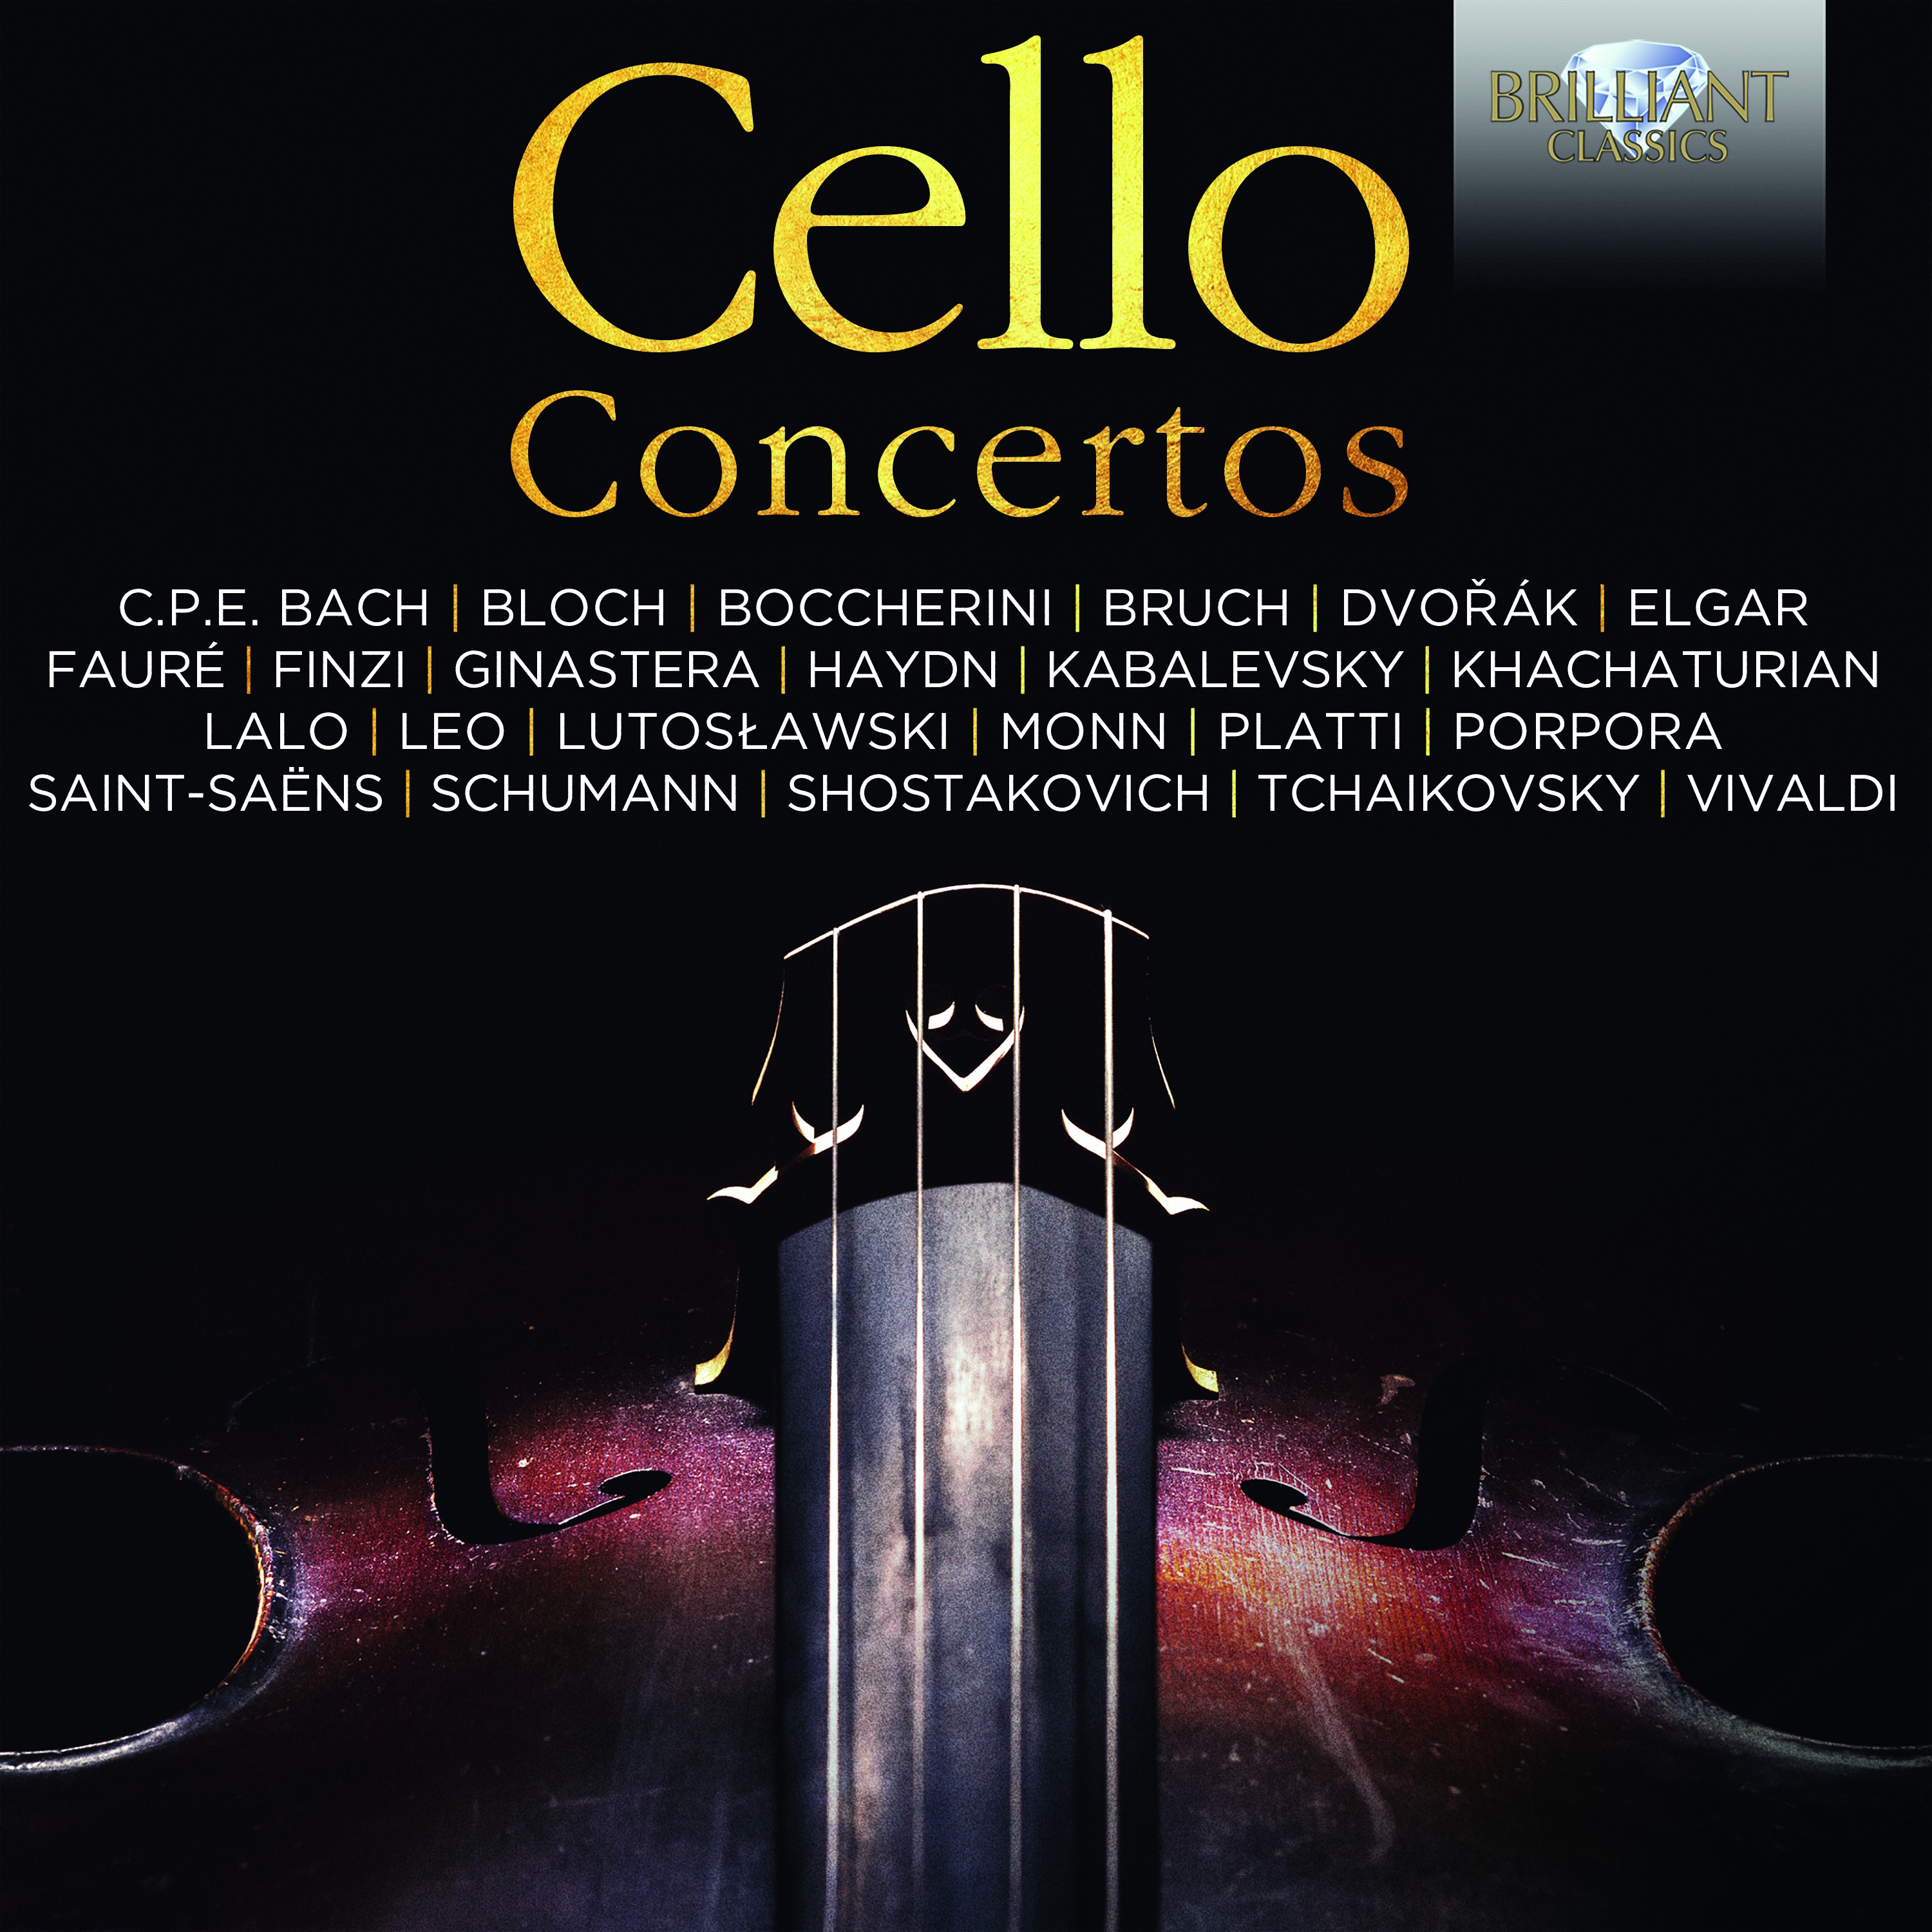 Cello Concerto in D Minor, RV 405: III. Allegro